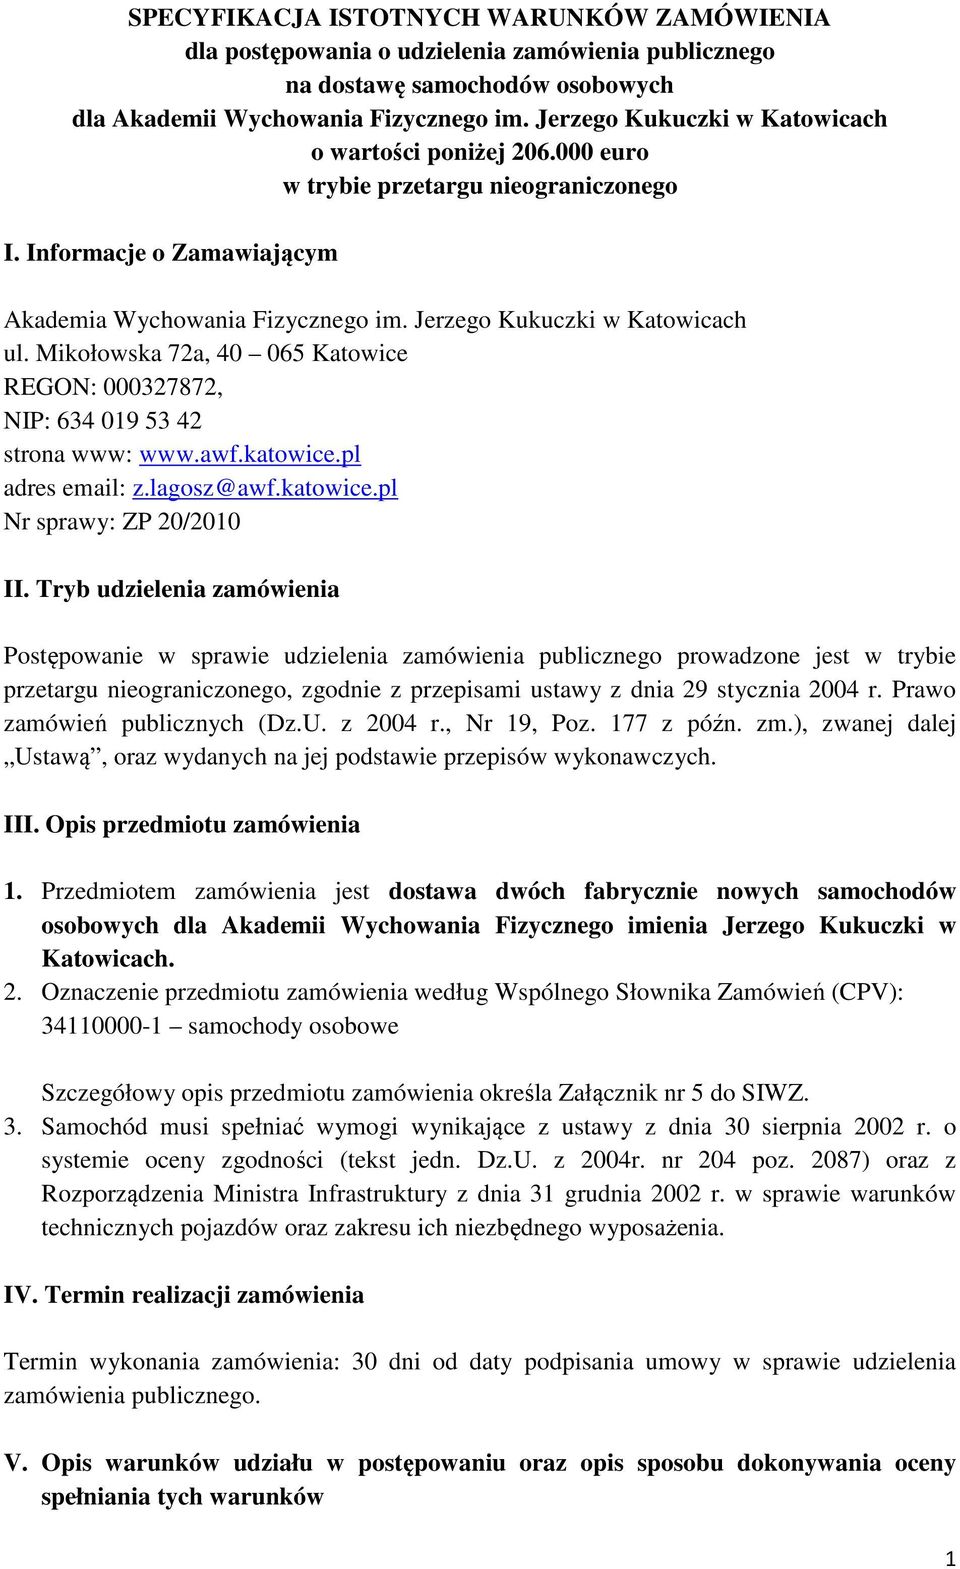 Mikołowska 72a, 40 065 Katowice REGON: 000327872, NIP: 634 019 53 42 strona www: www.awf.katowice.pl adres email: z.lagosz@awf.katowice.pl Nr sprawy: ZP 20/2010 II.